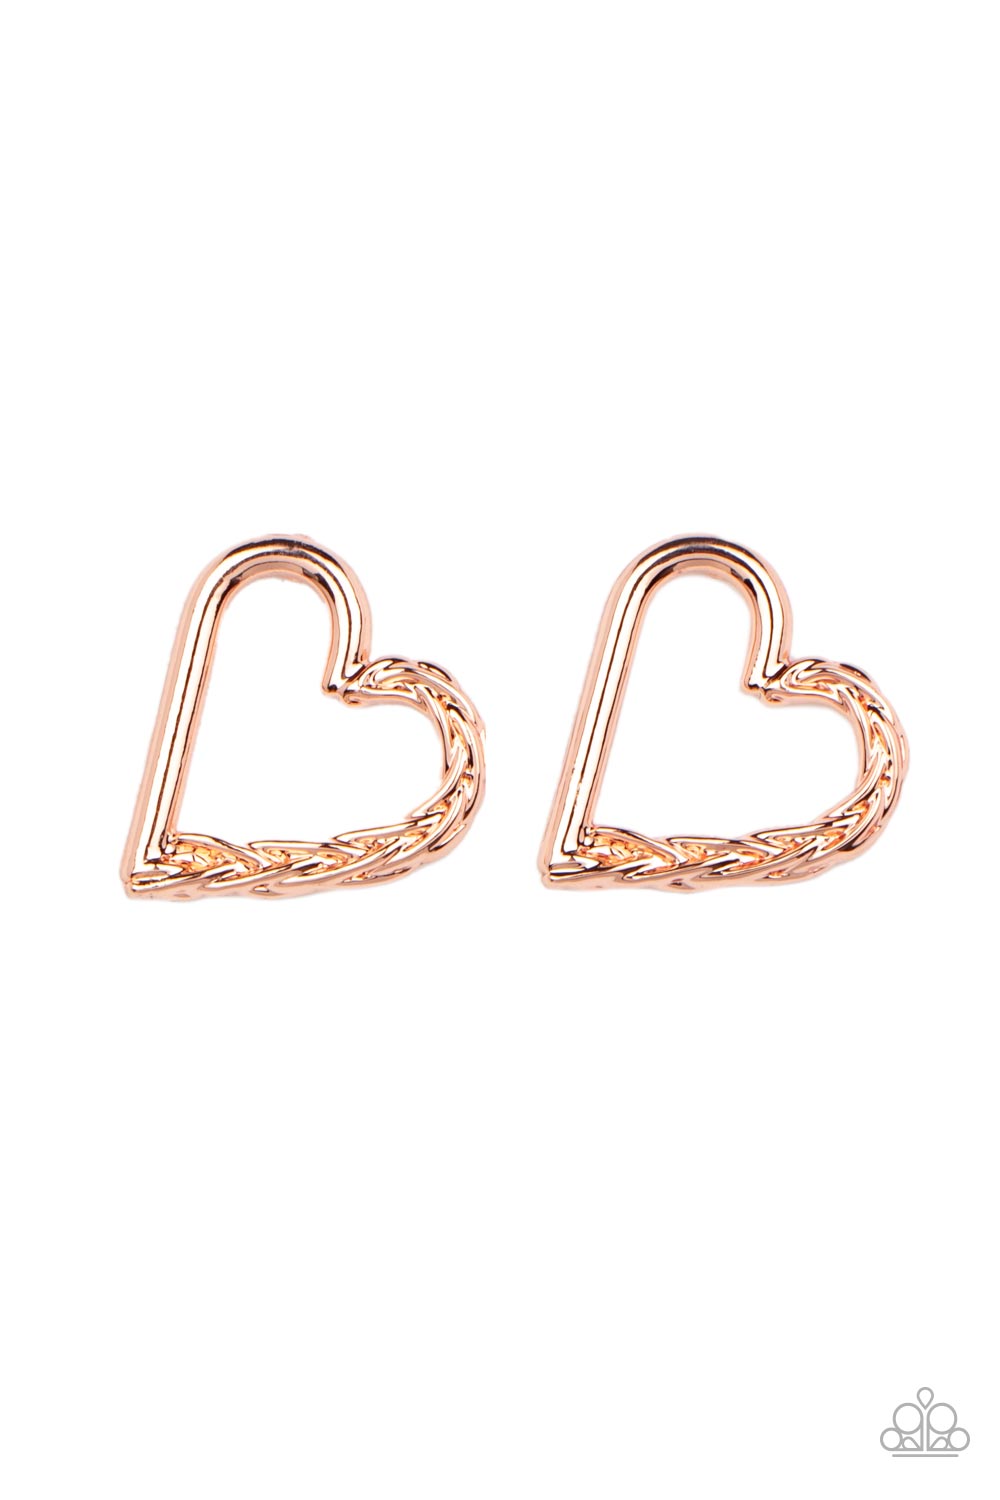 Cupid, Who? - Copper Heart Earrings - Paparazzi Accessories - Paparazzi Accessories 